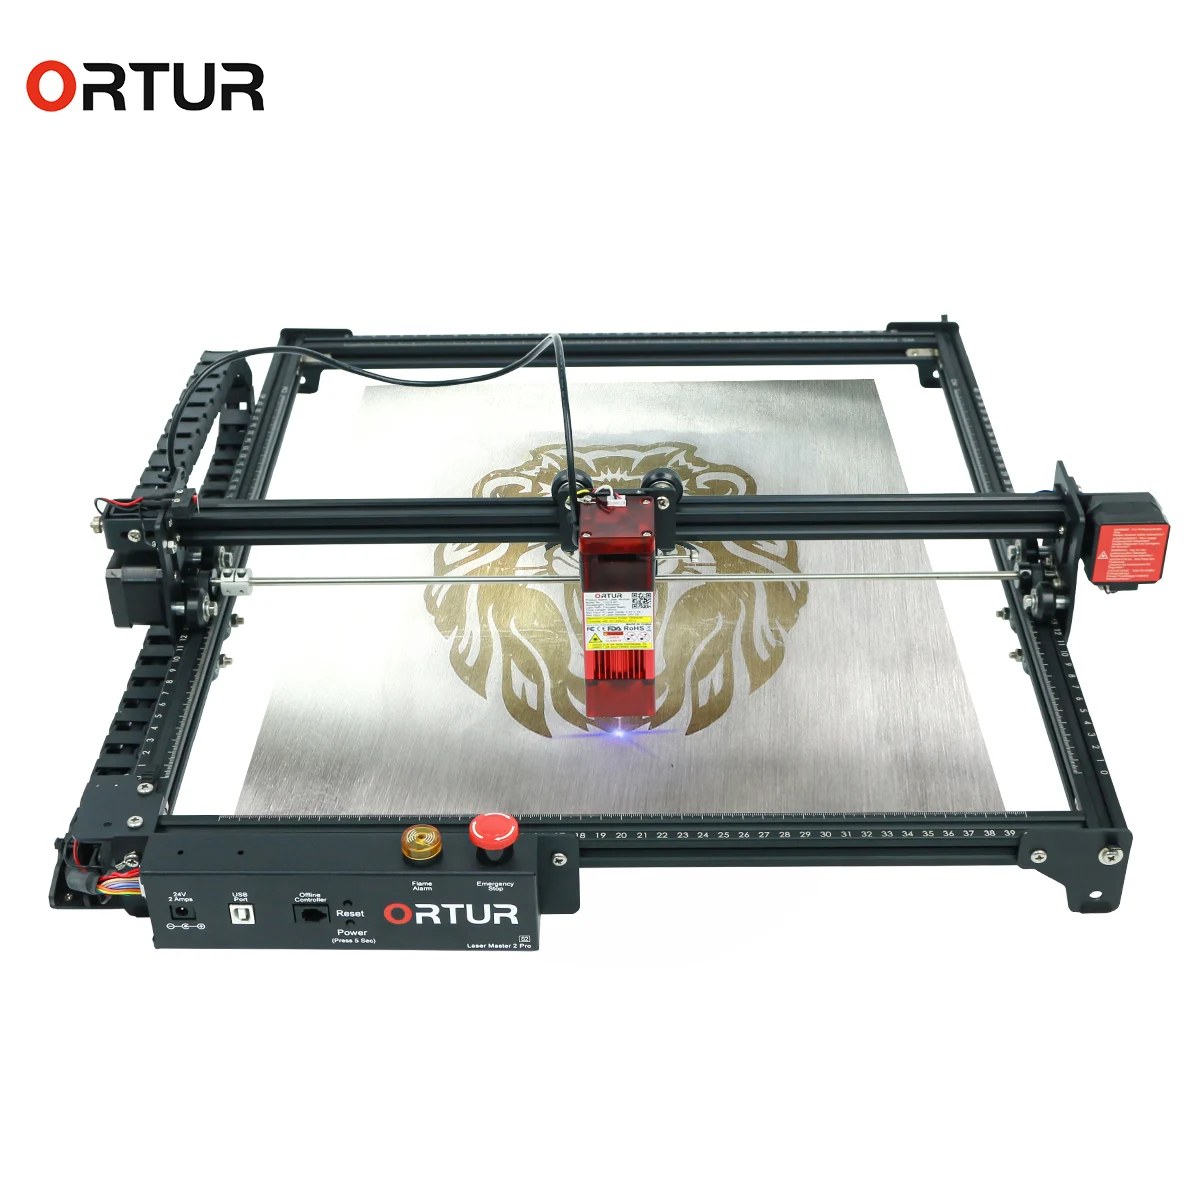 

Ortur Laser Master 2 Pro S2 Laser Engraver DIY Laser Marking for Metal with 32-bit Motherboard 400*400mm Area Large Engraving